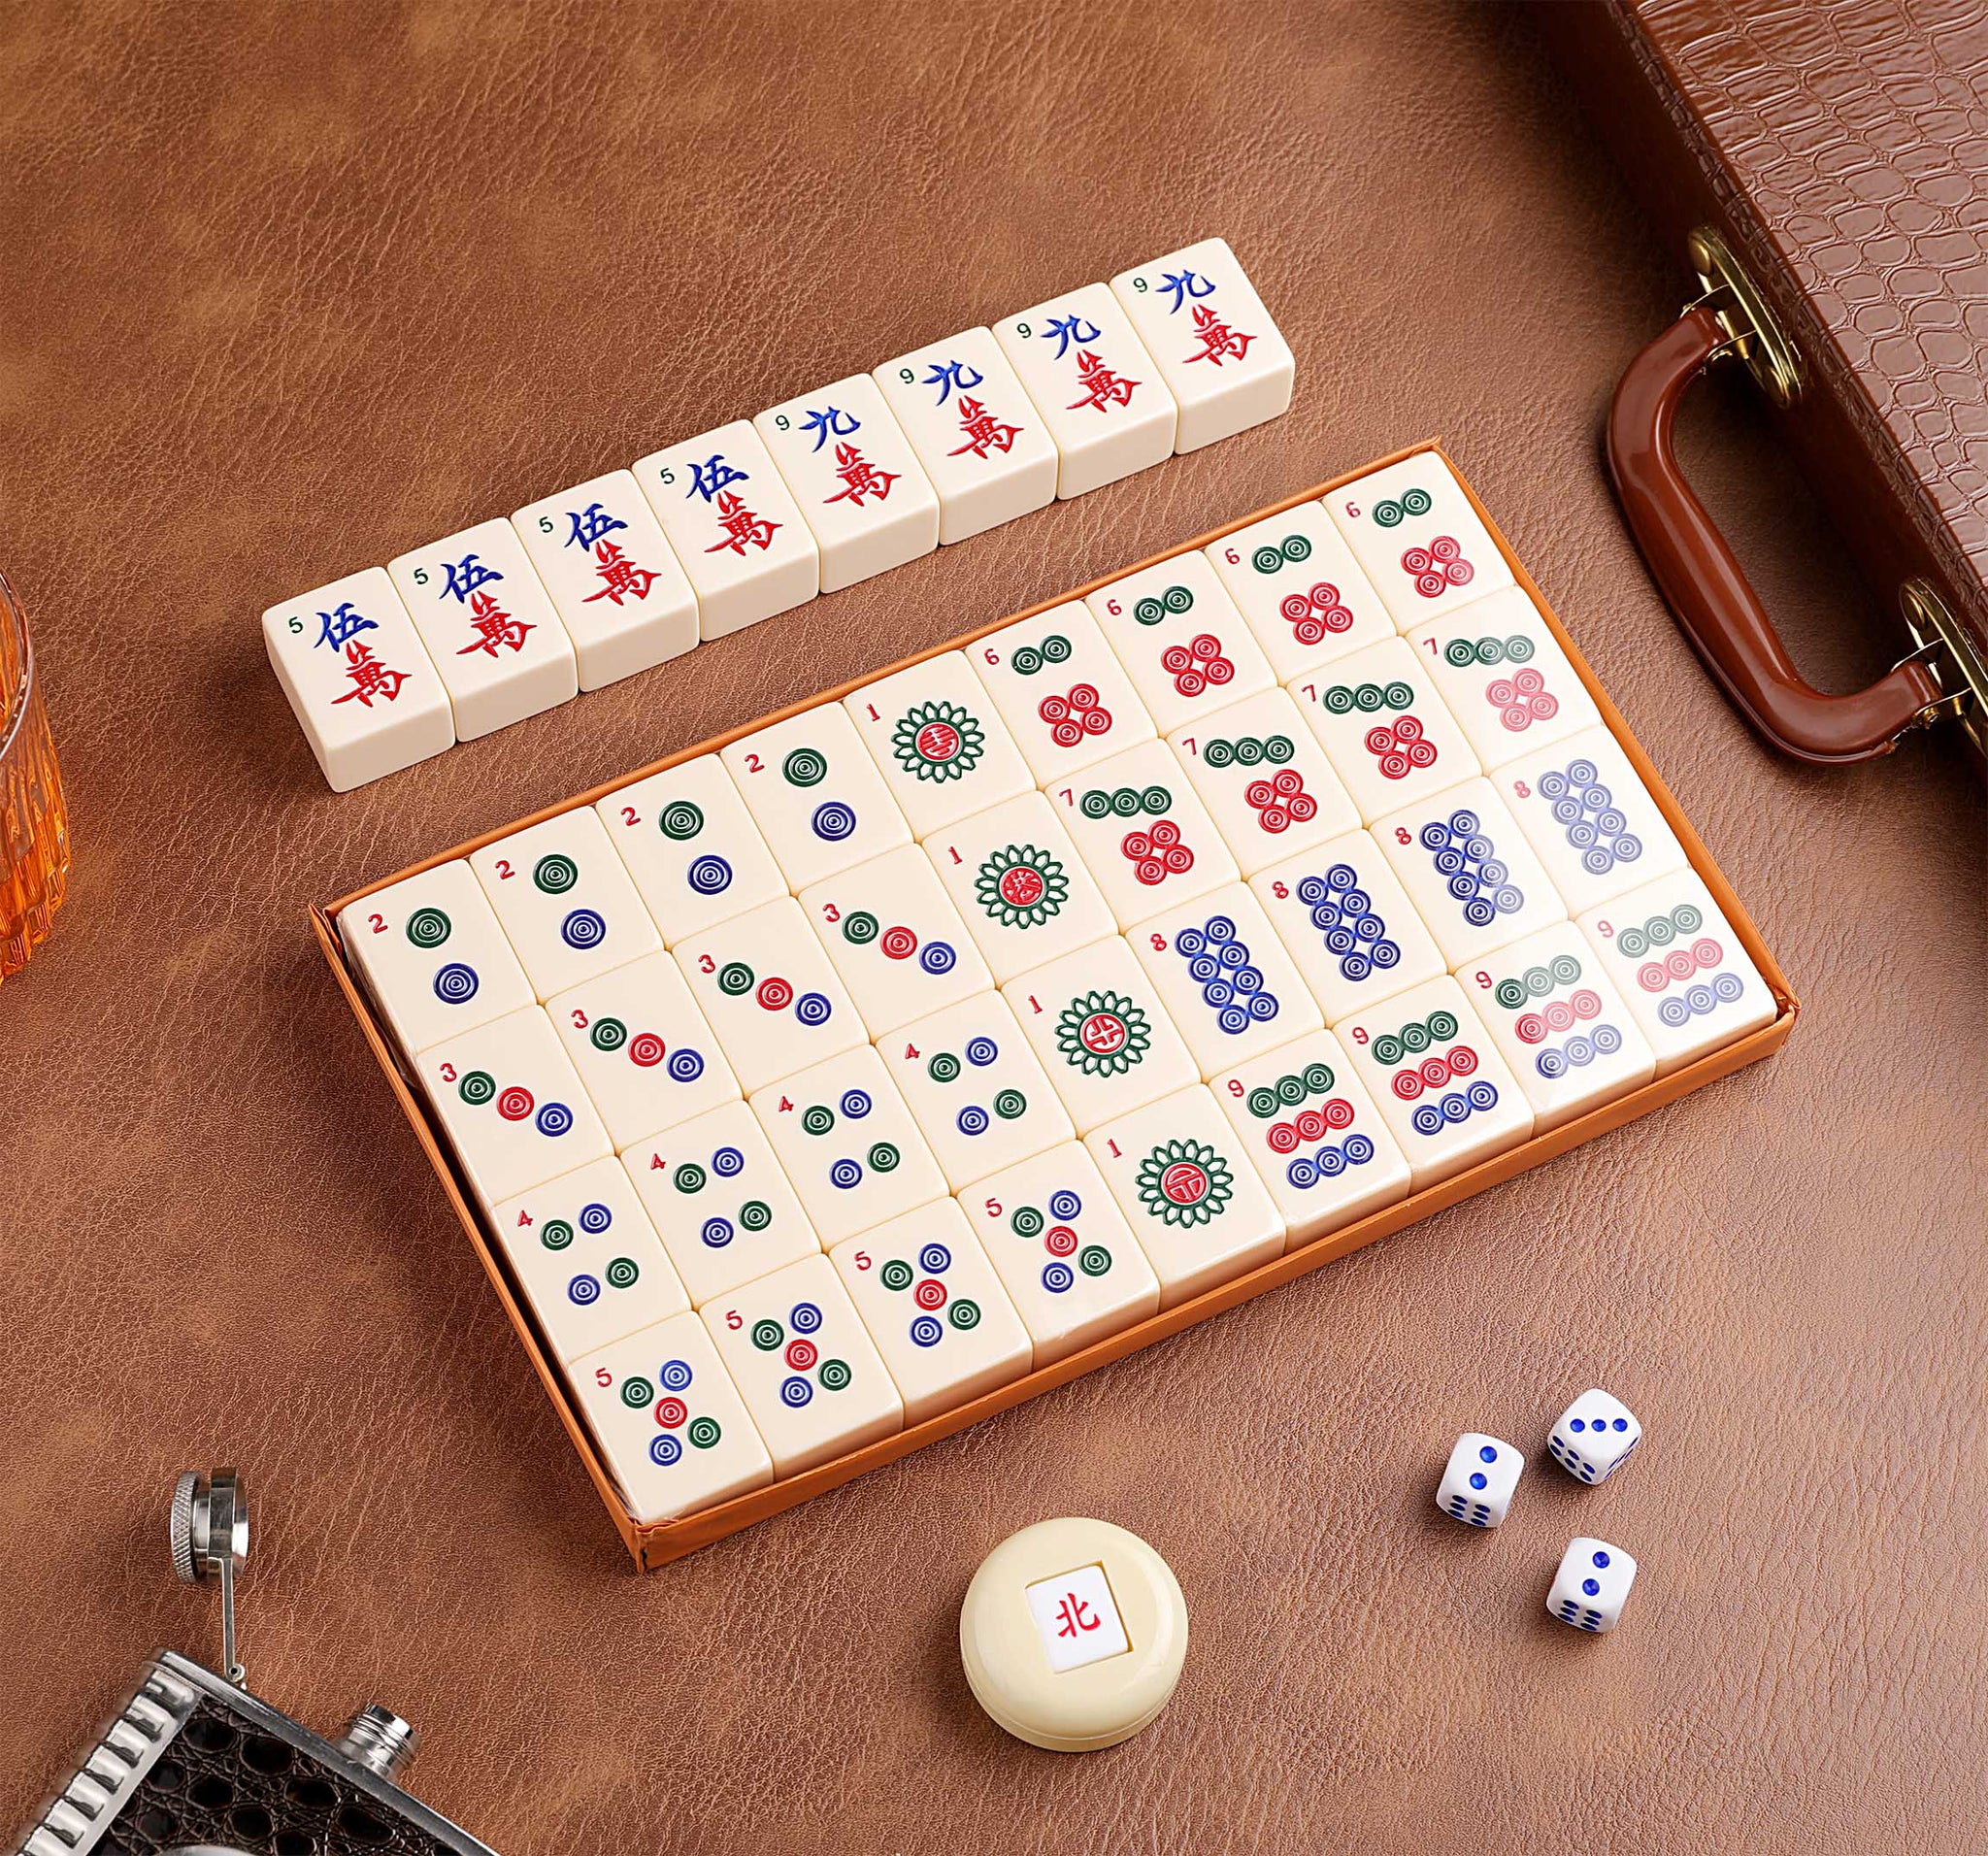 Mahjong Tiles by Cao Yulong